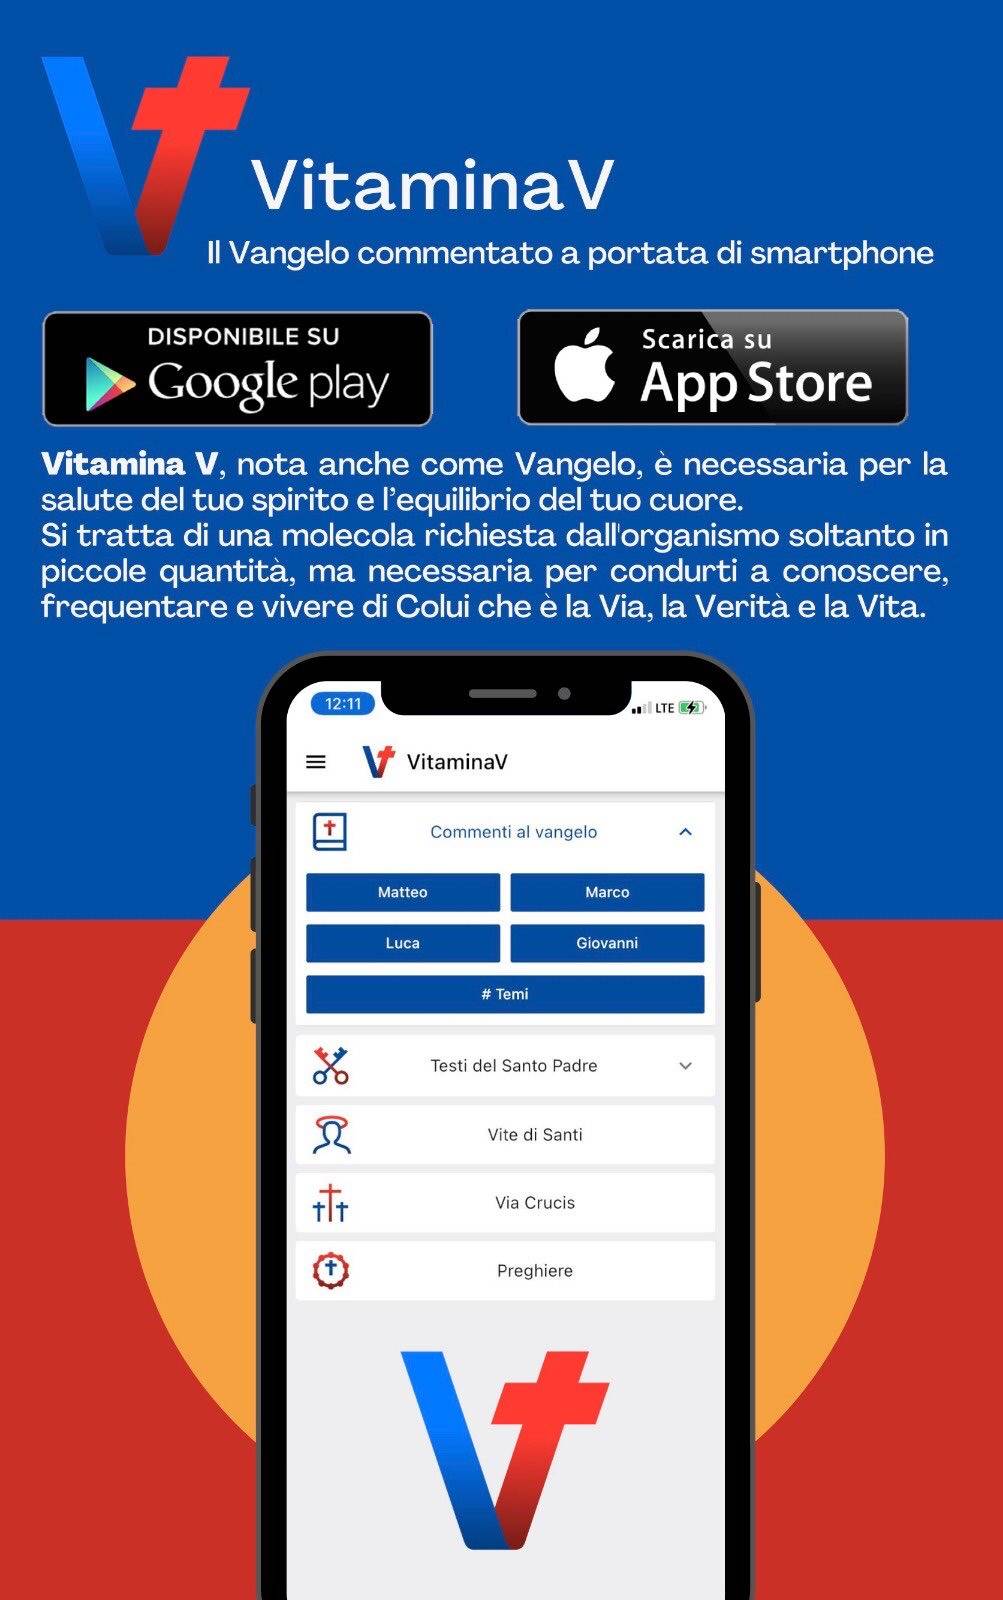 Nasce VitaminaV, l'app per "dialogare" con Gesù